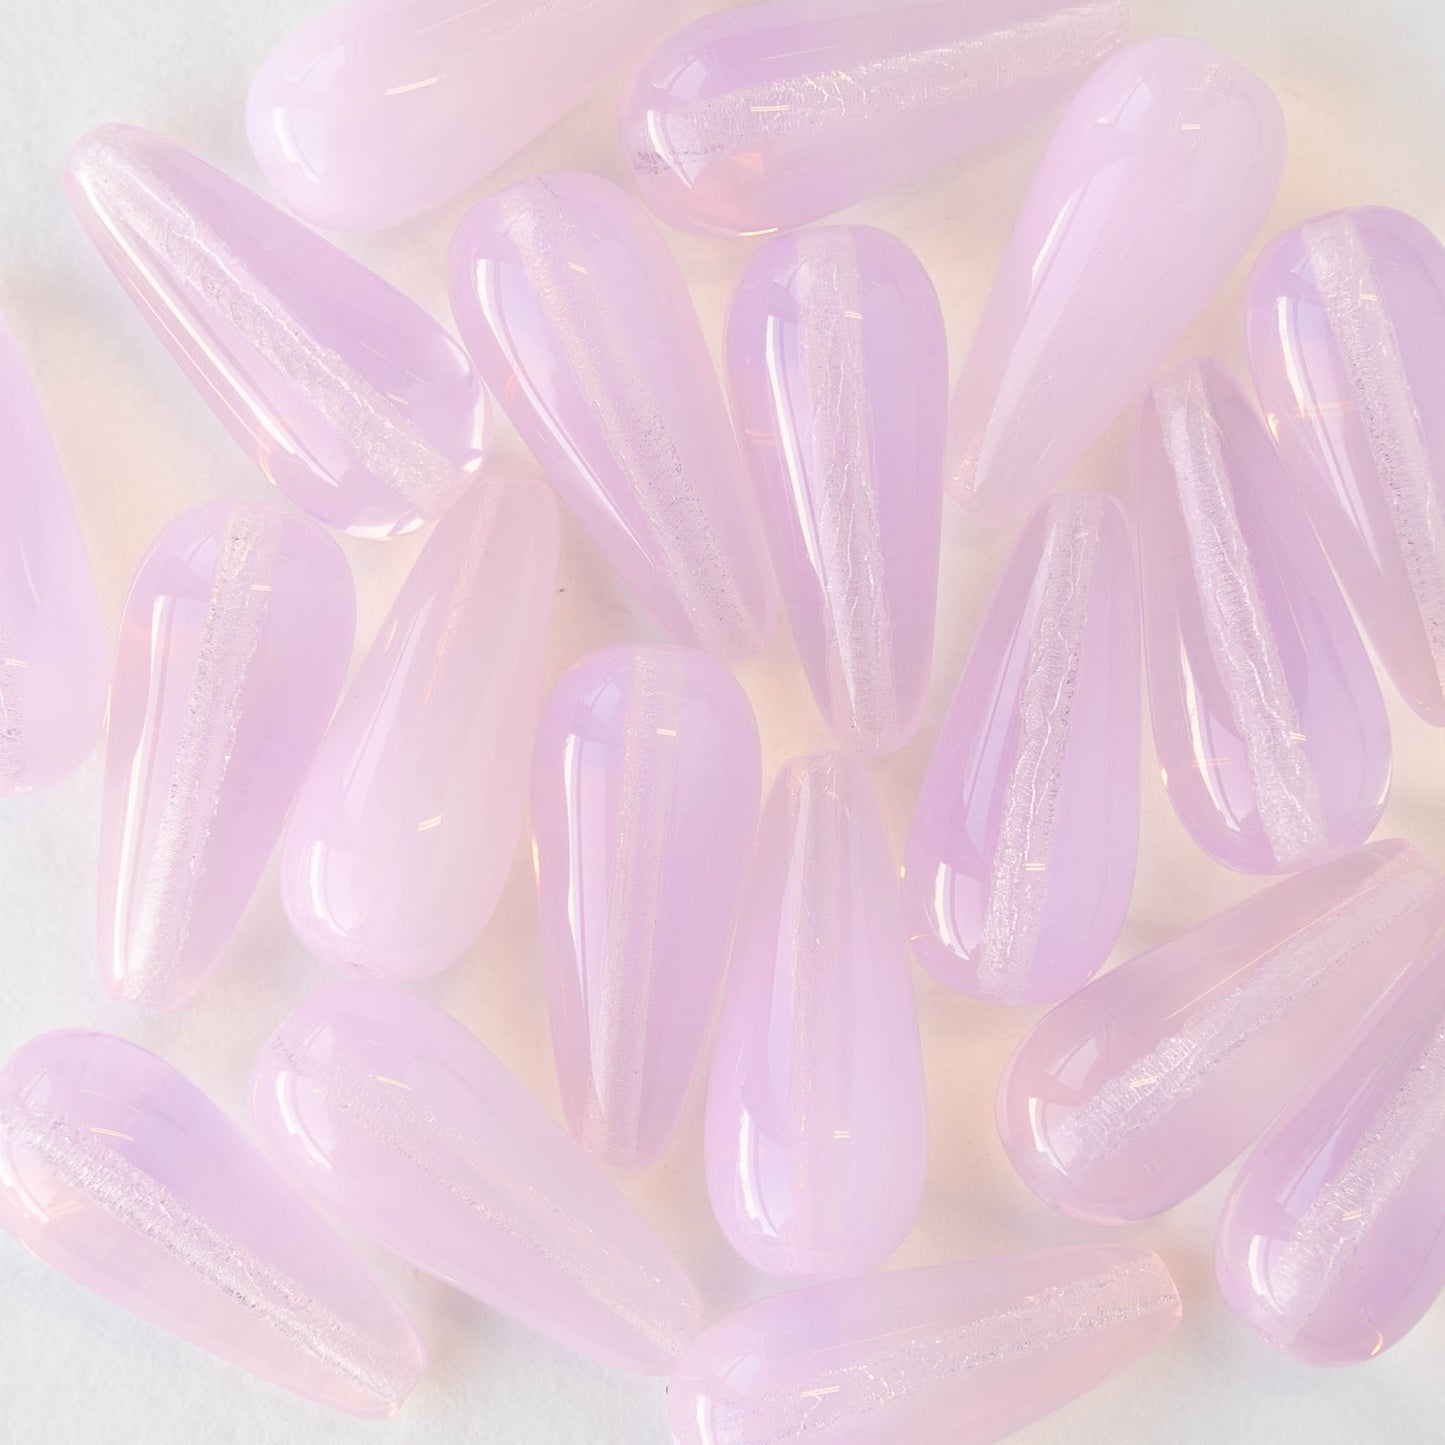 9x20mm Glass Teardrops - Pink Opaline - 10 or 20 beads